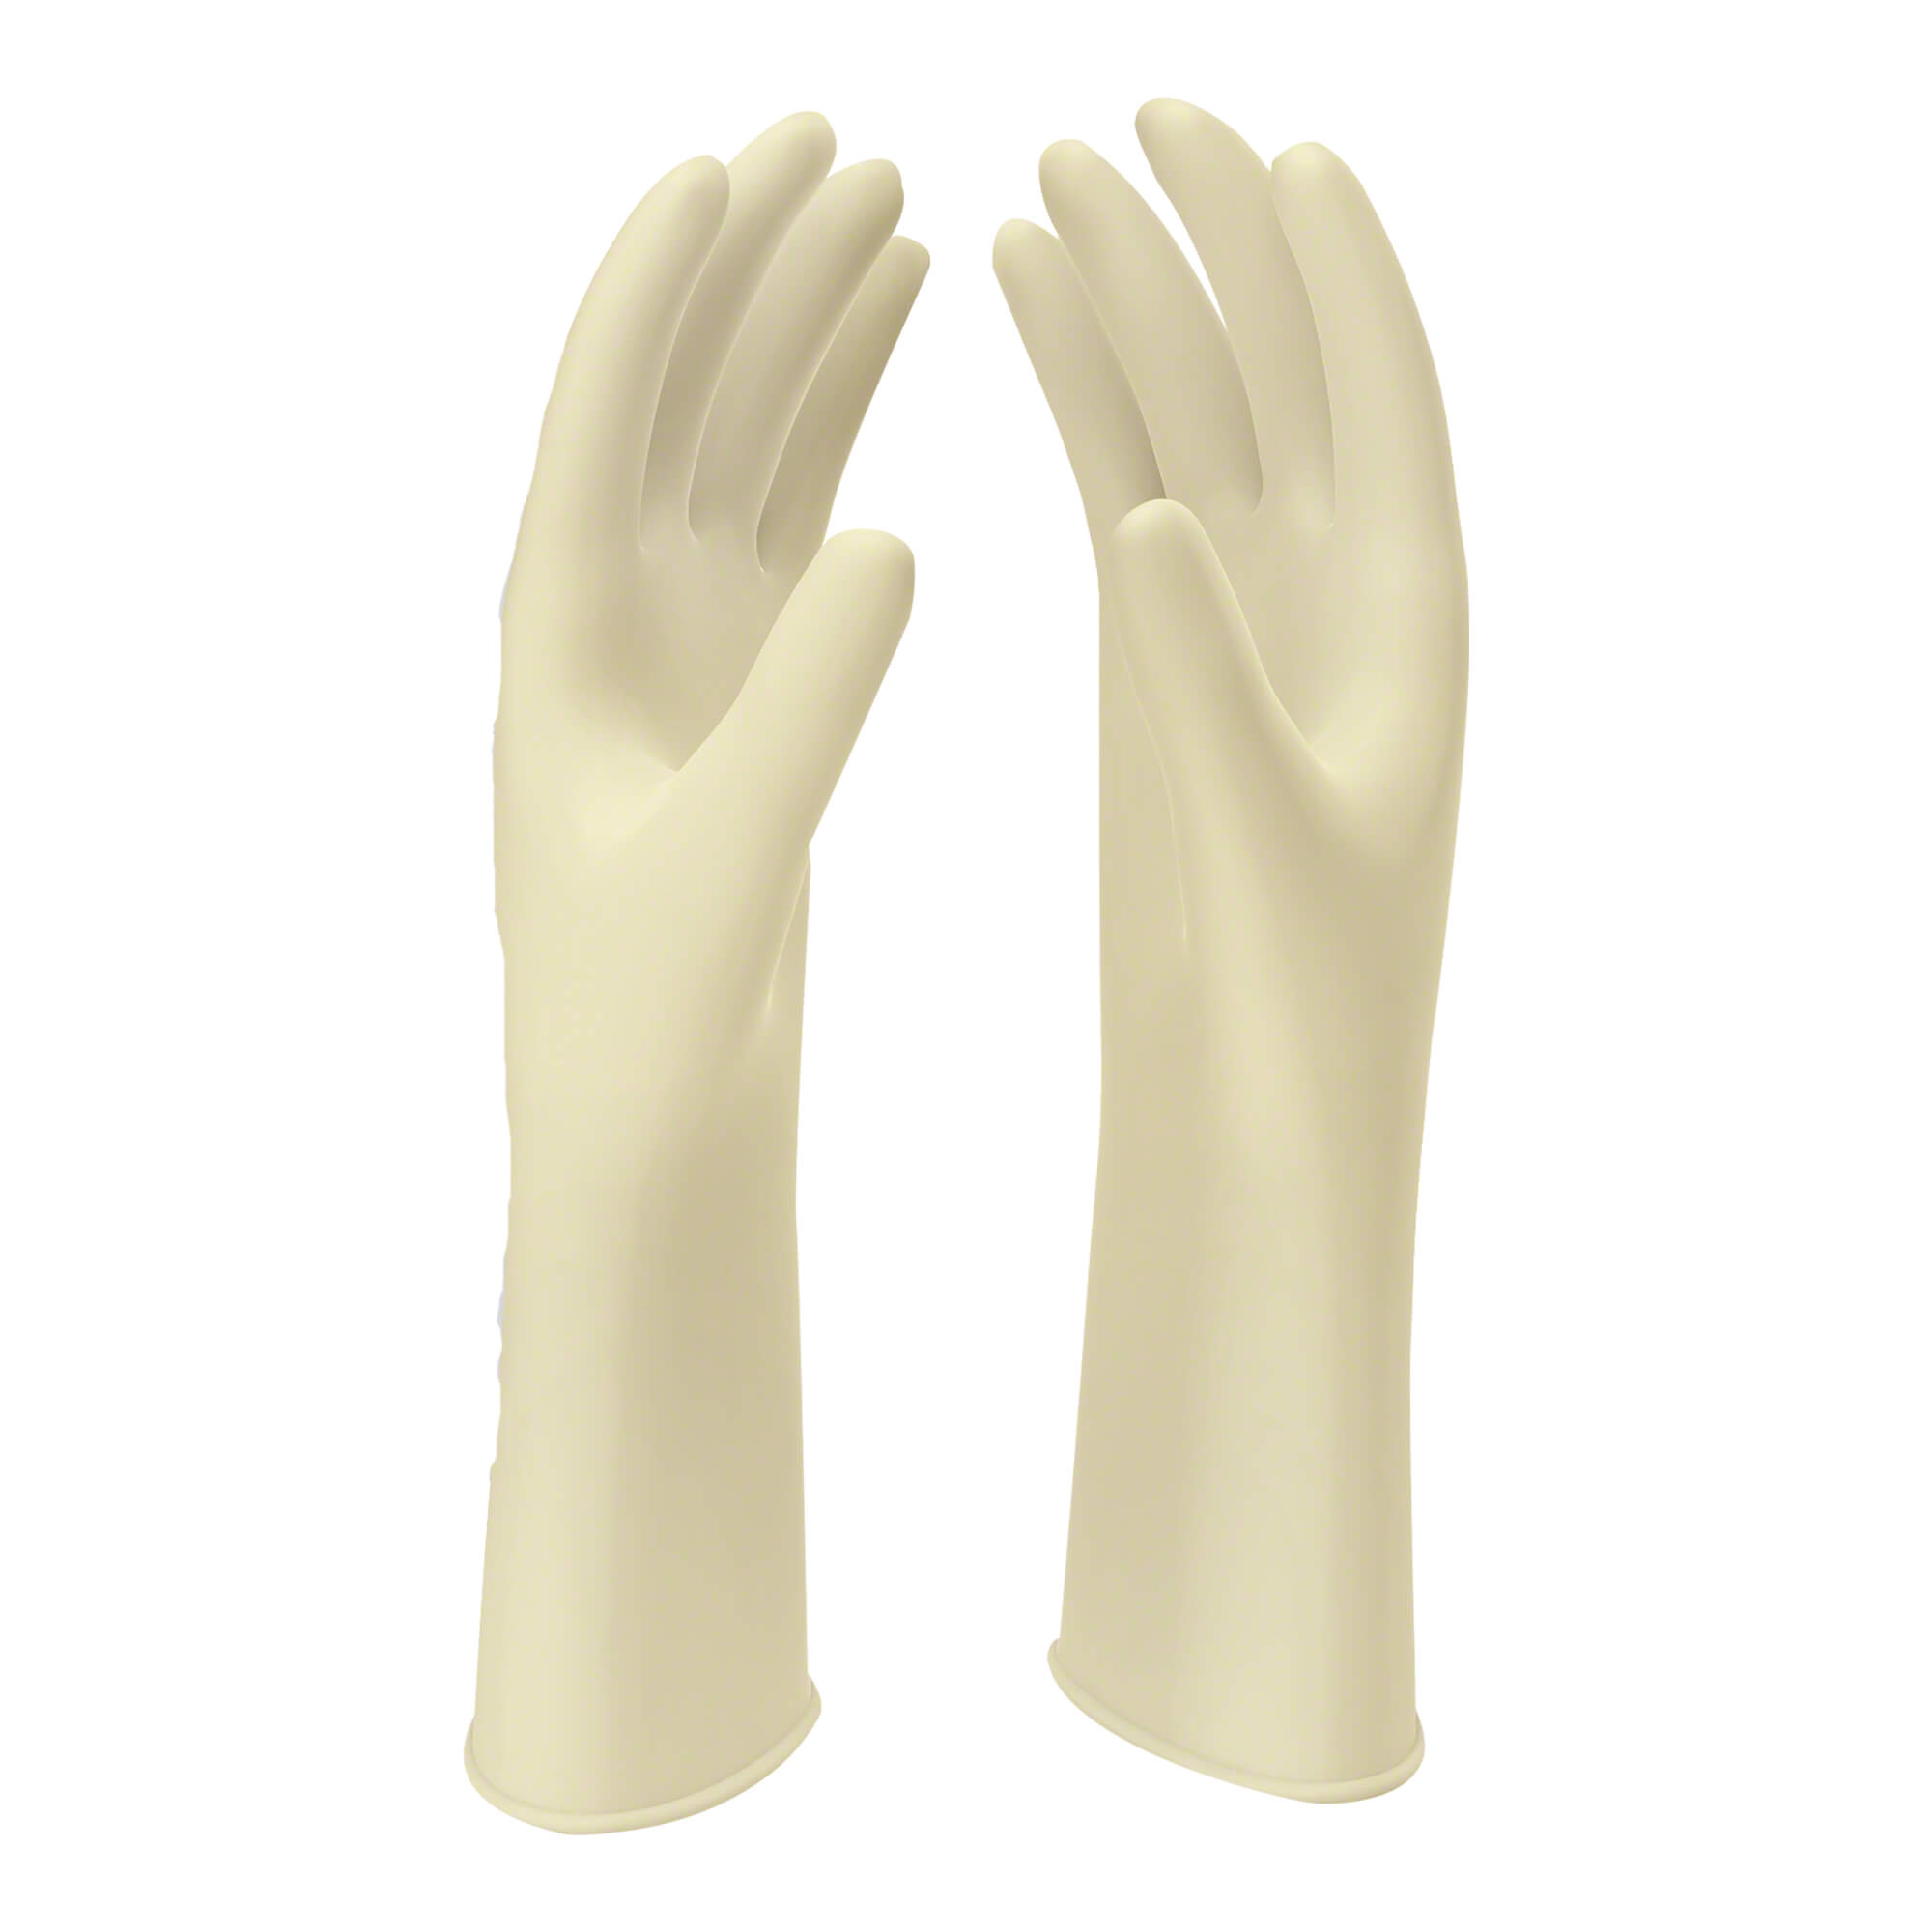 Naturweiße Latex OP-Handschuhe. Größe 6,5.